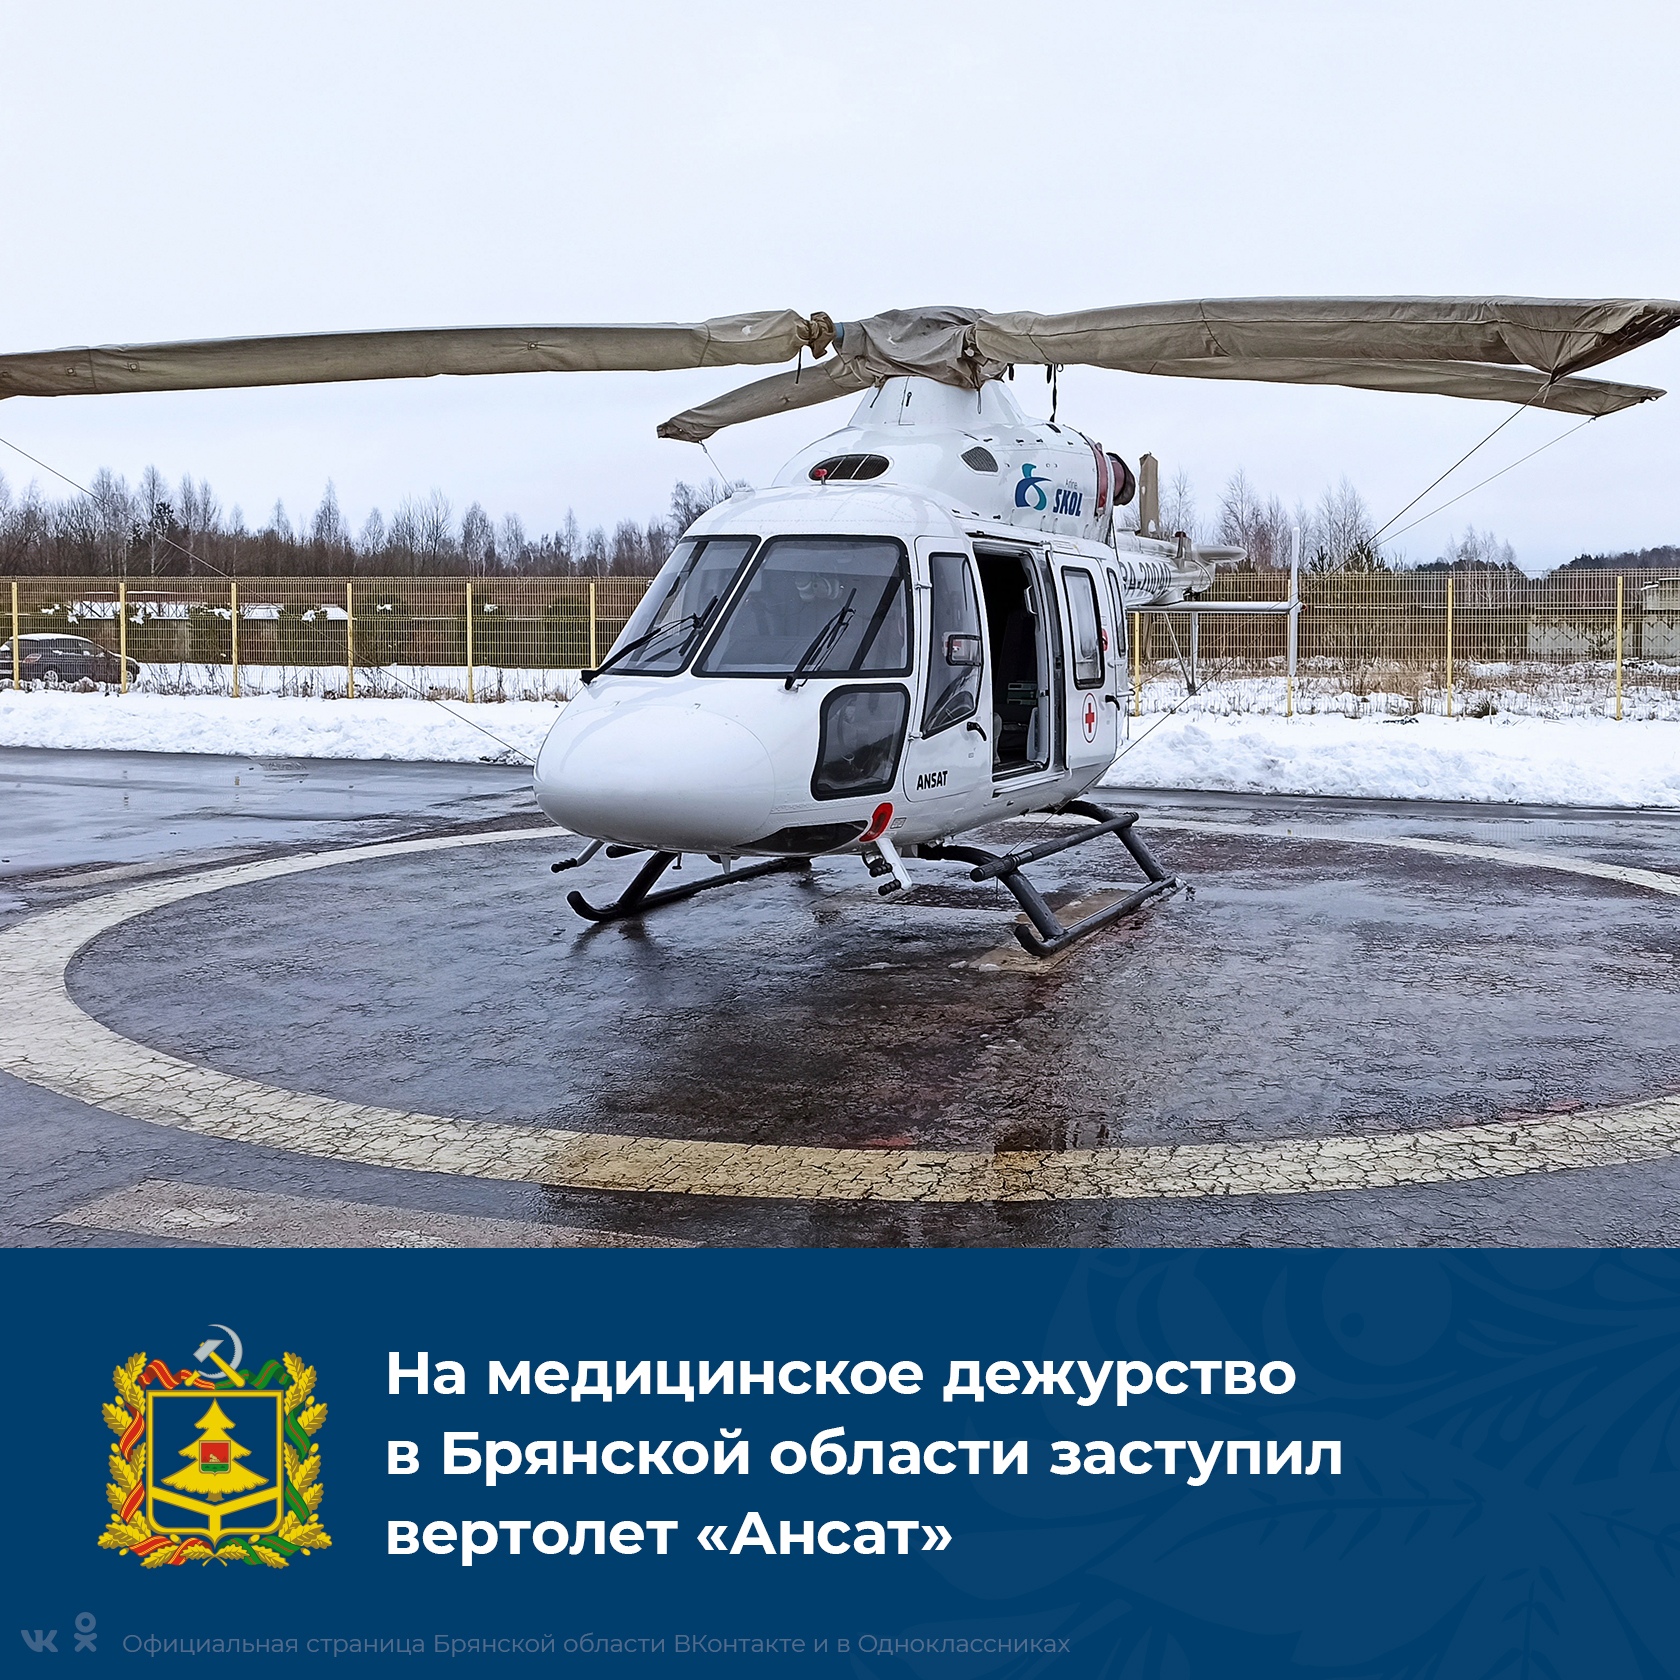 У брянской медицины есть современный медицинский вертолет «Ансат»